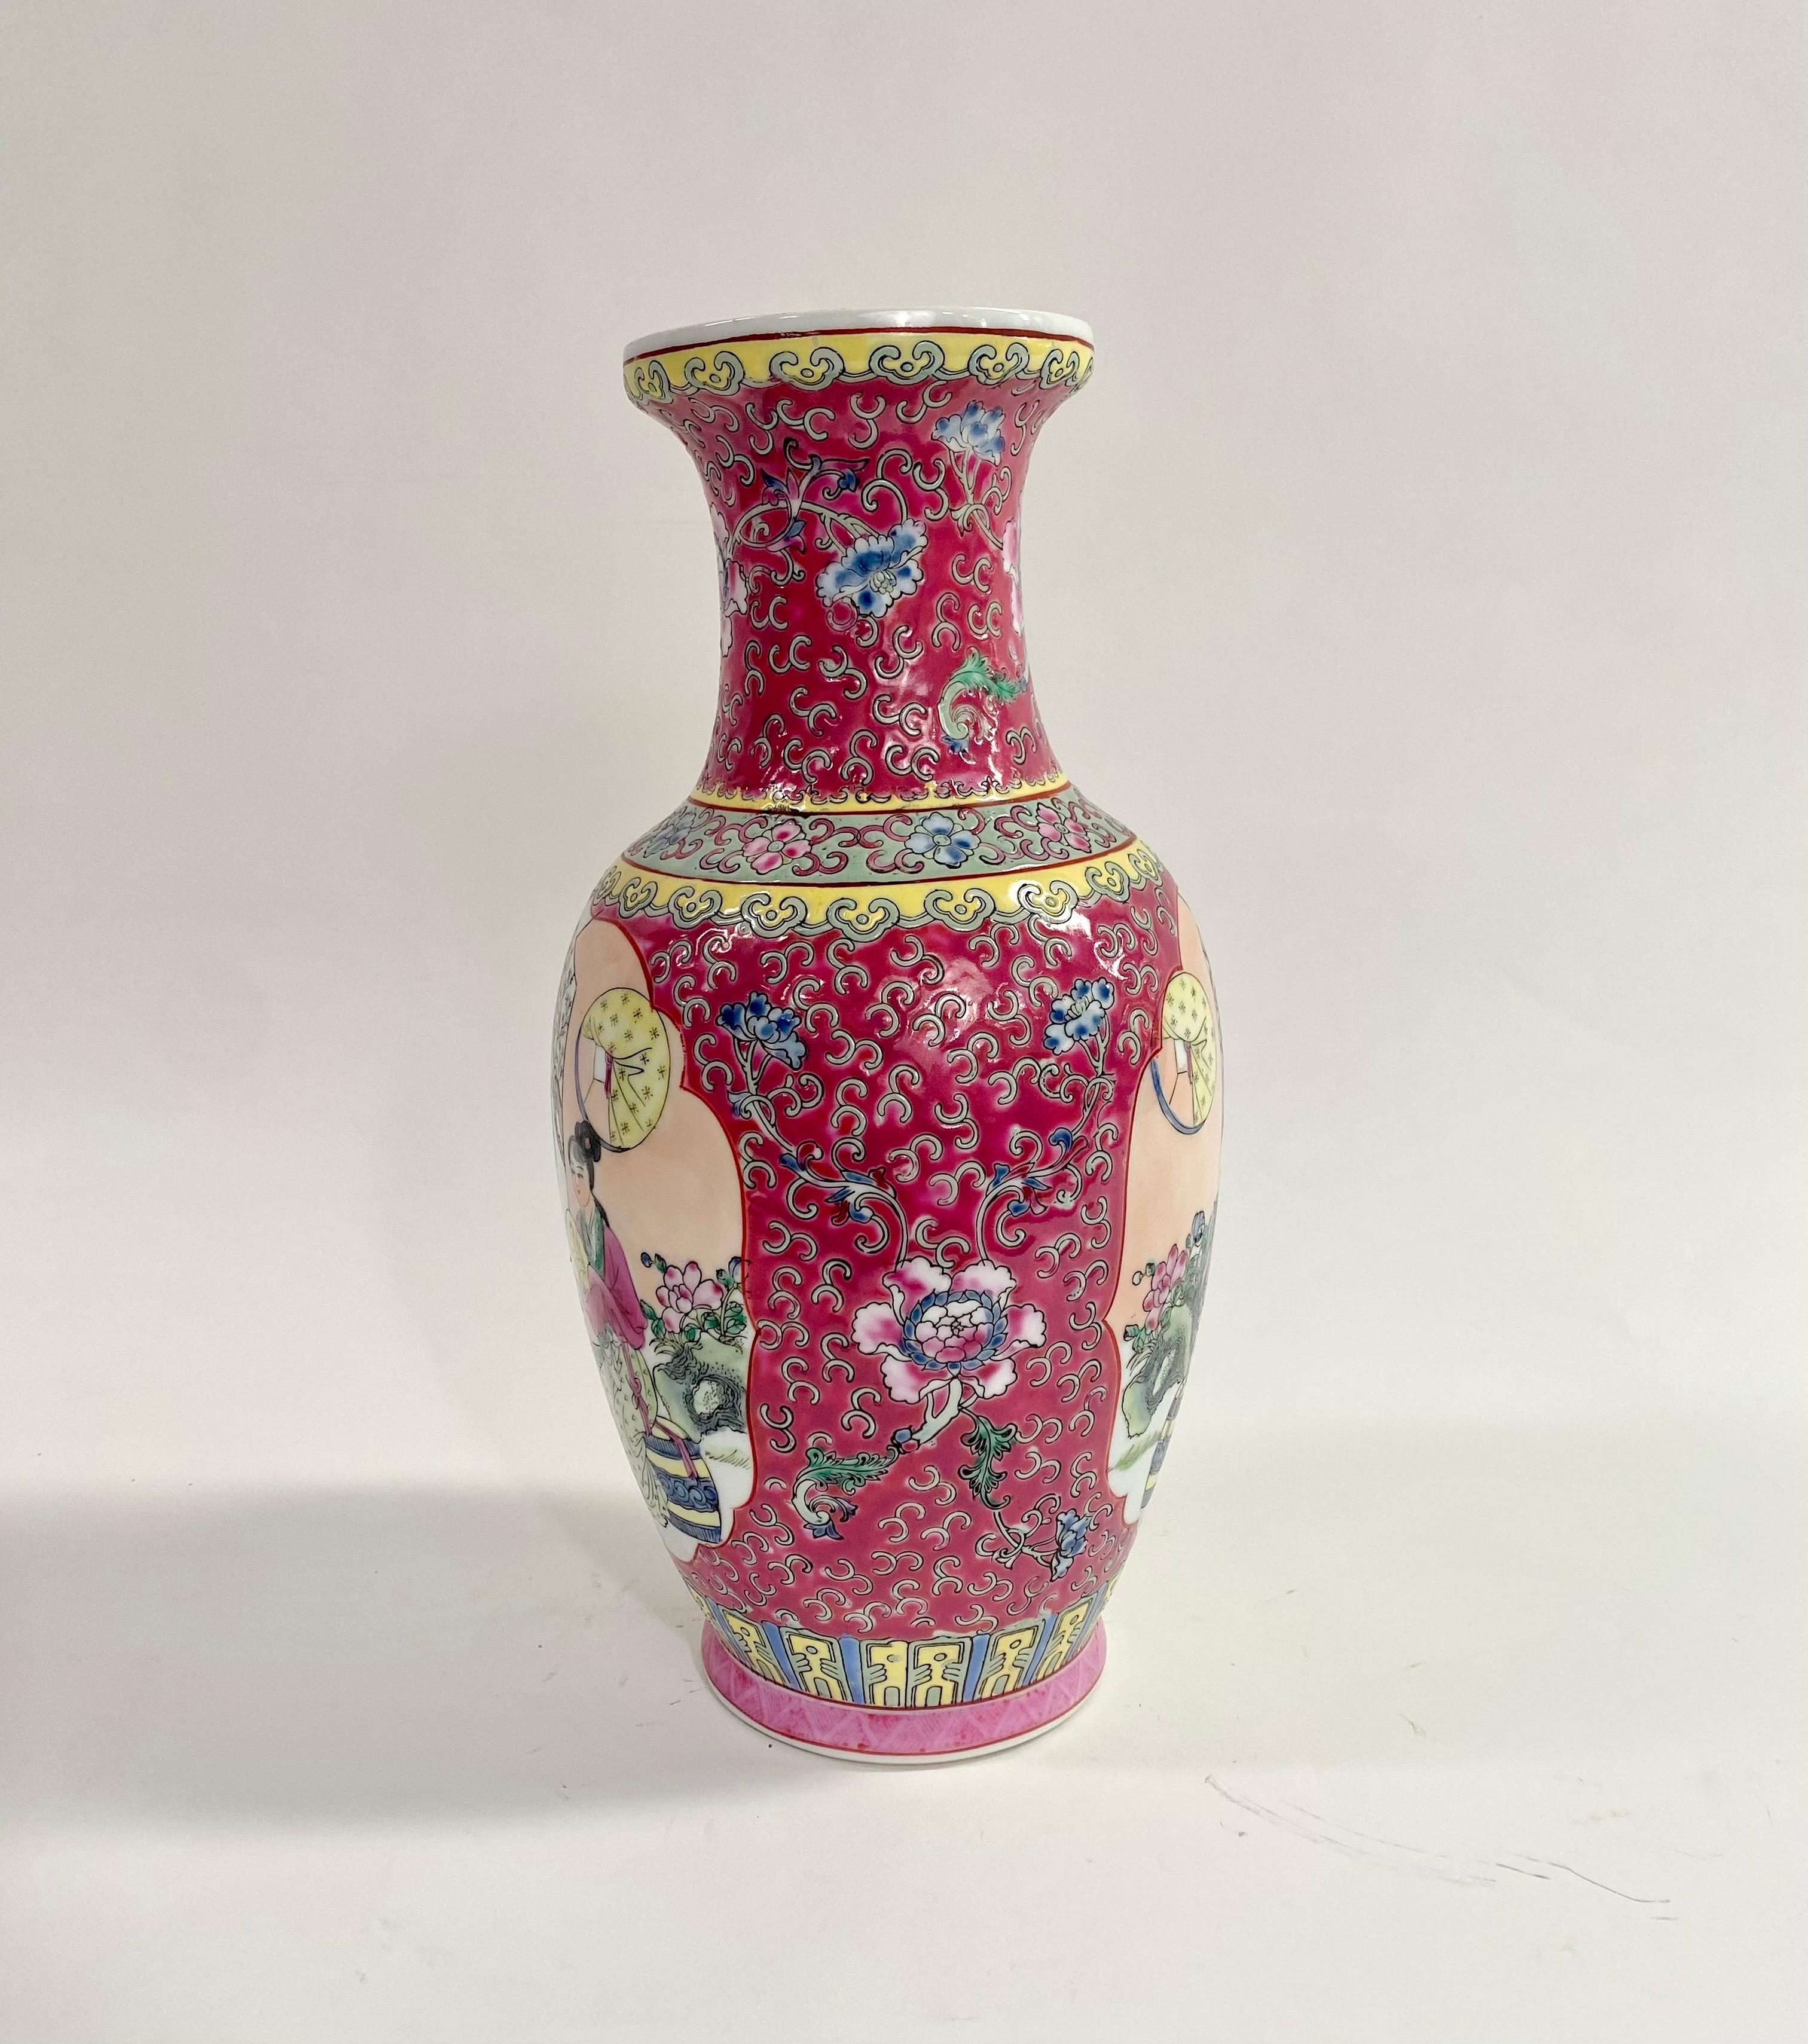 Vase vintage en céramique d'exportation orientale chinoise.  Le vase peint à la main représente une scène de trois femmes asiatiques profitant de leur temps dans un beau jardin. Le vase présente un fond rose vif avec des motifs verts et jaunes qui